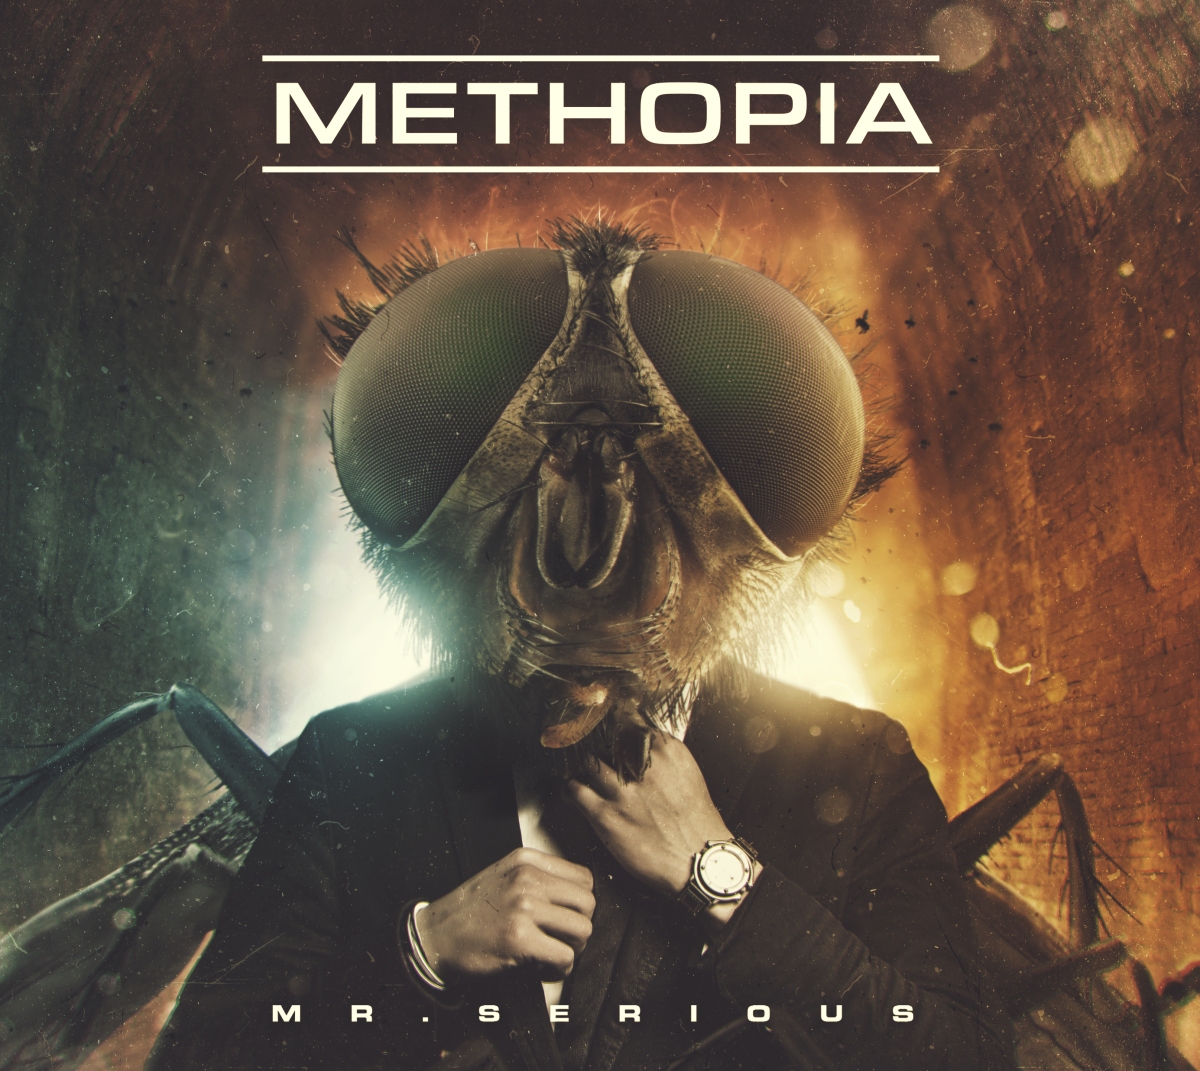 Methopia – recenzja płyty: „Mr. Serious”